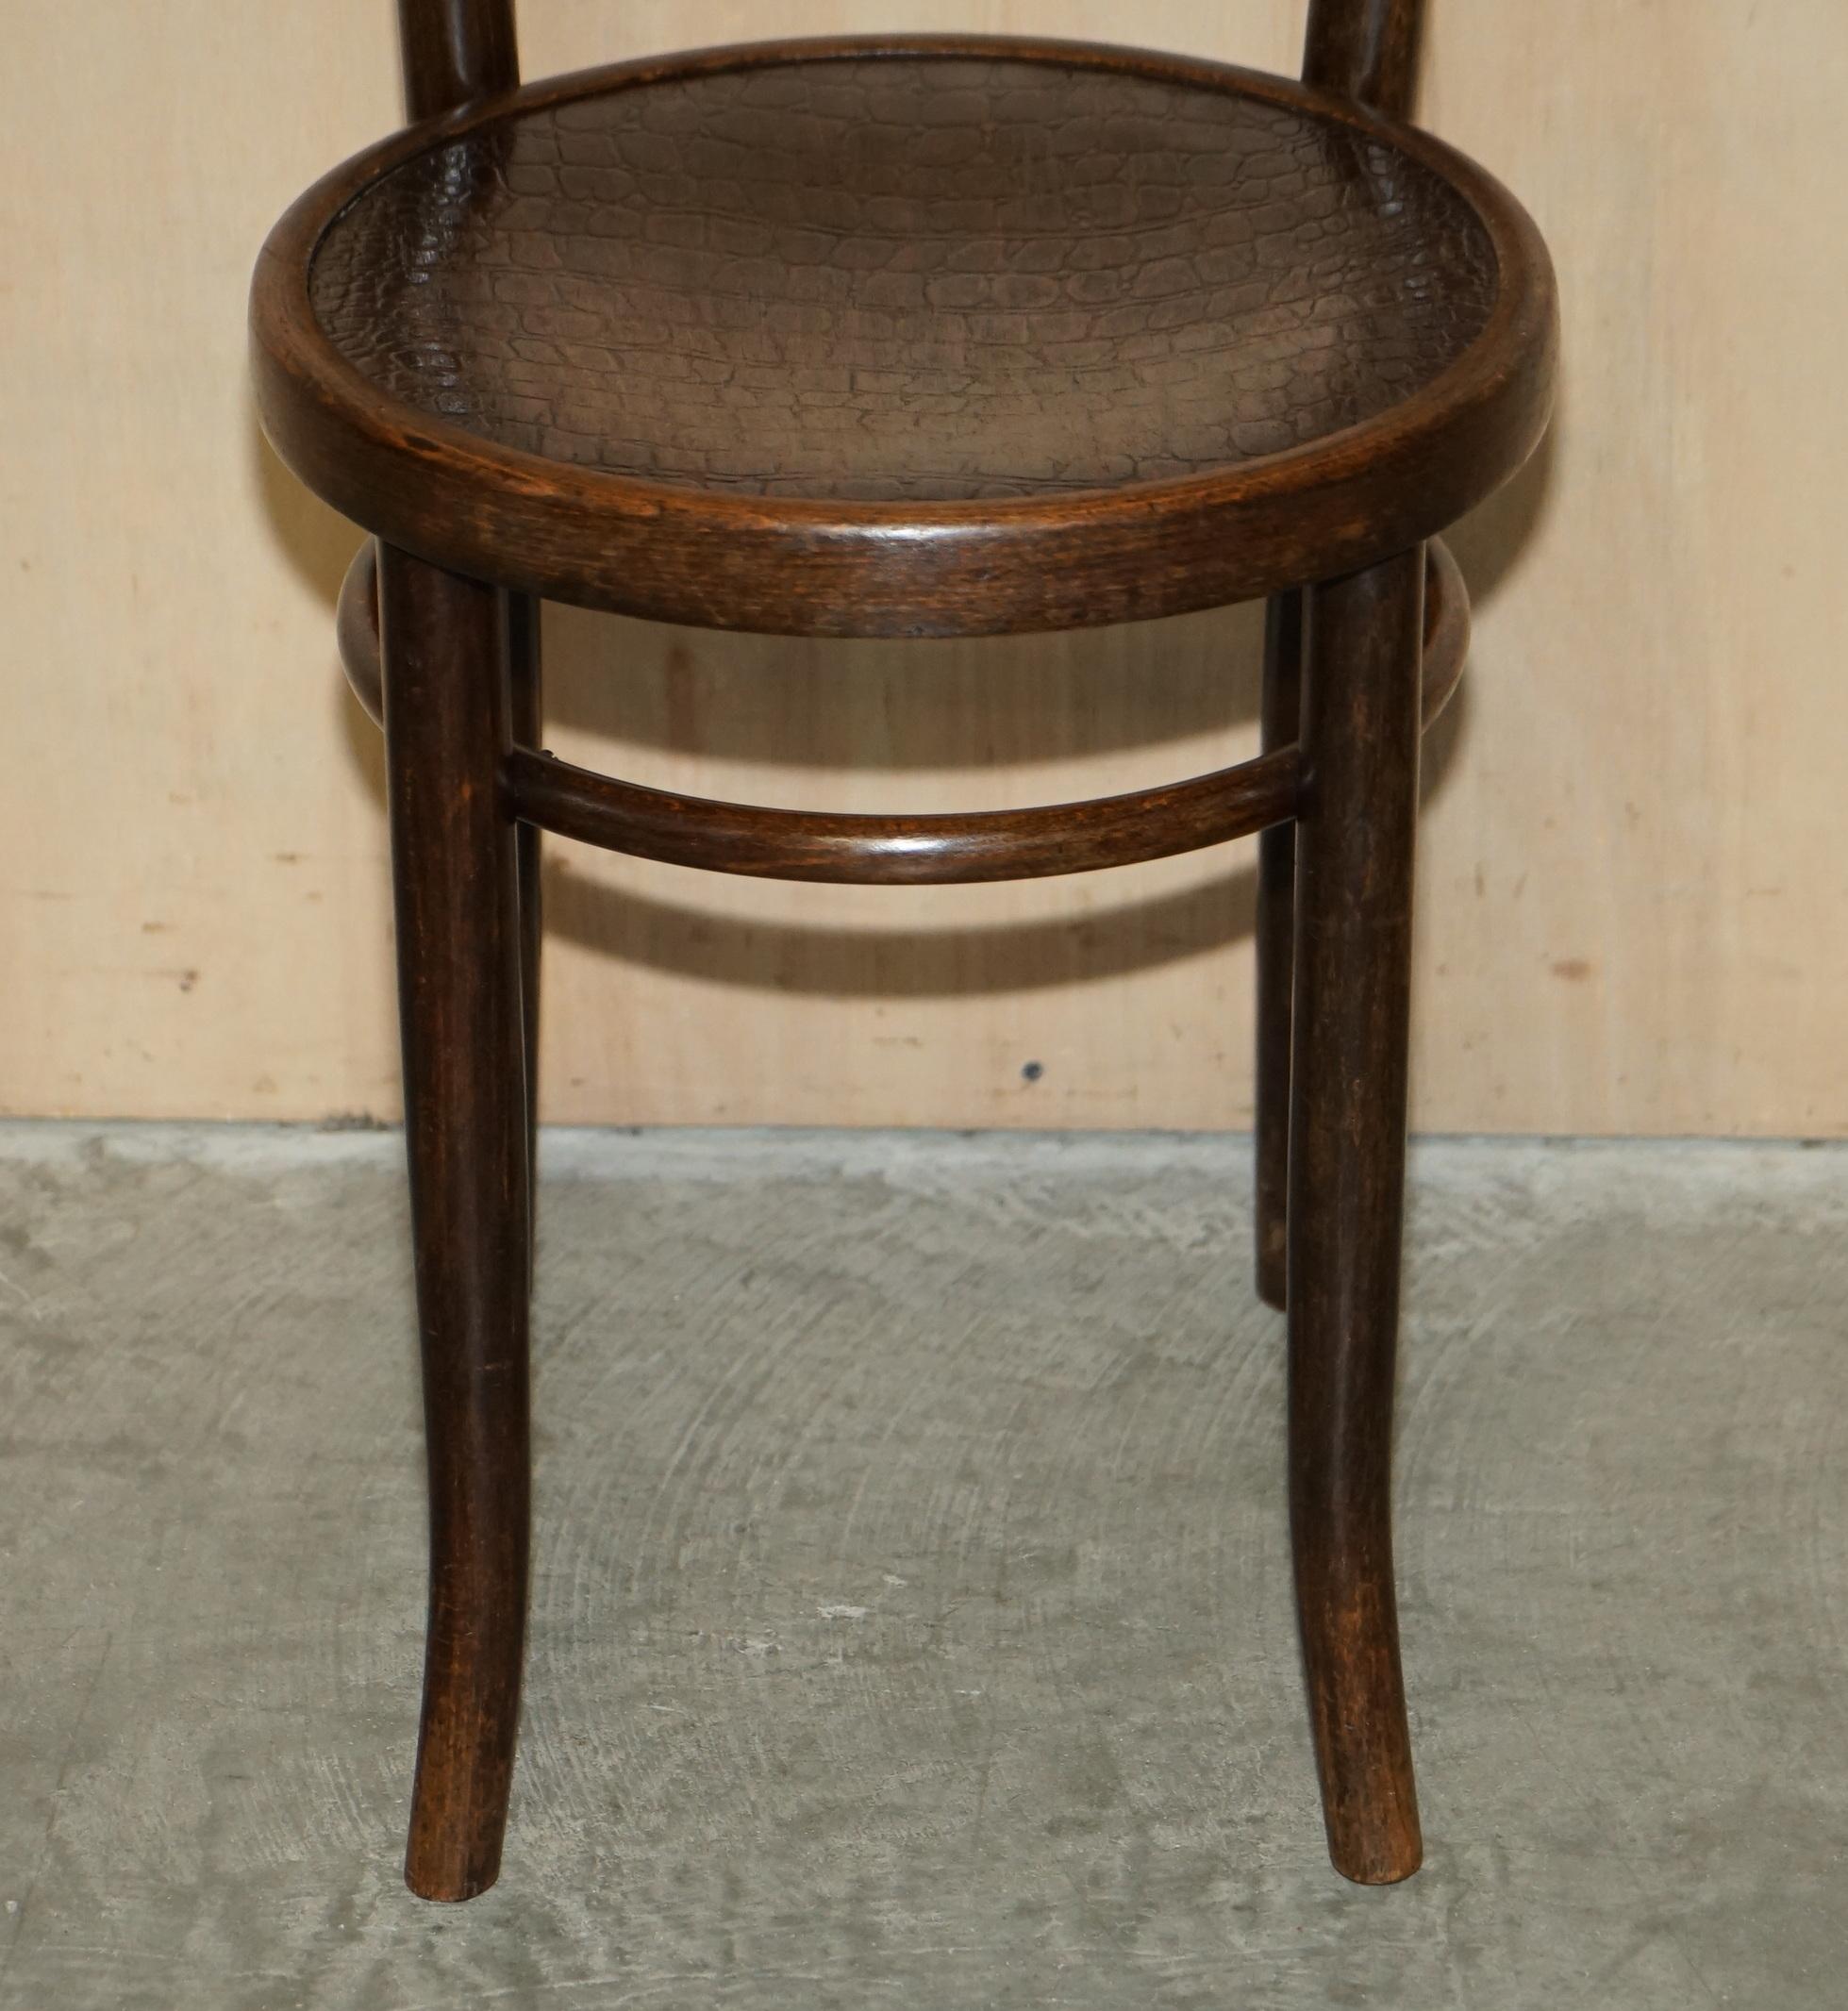 Edwardian Original circa 1920's Mundus Vienna Austria Bentwood High Back Kitchen Chair For Sale